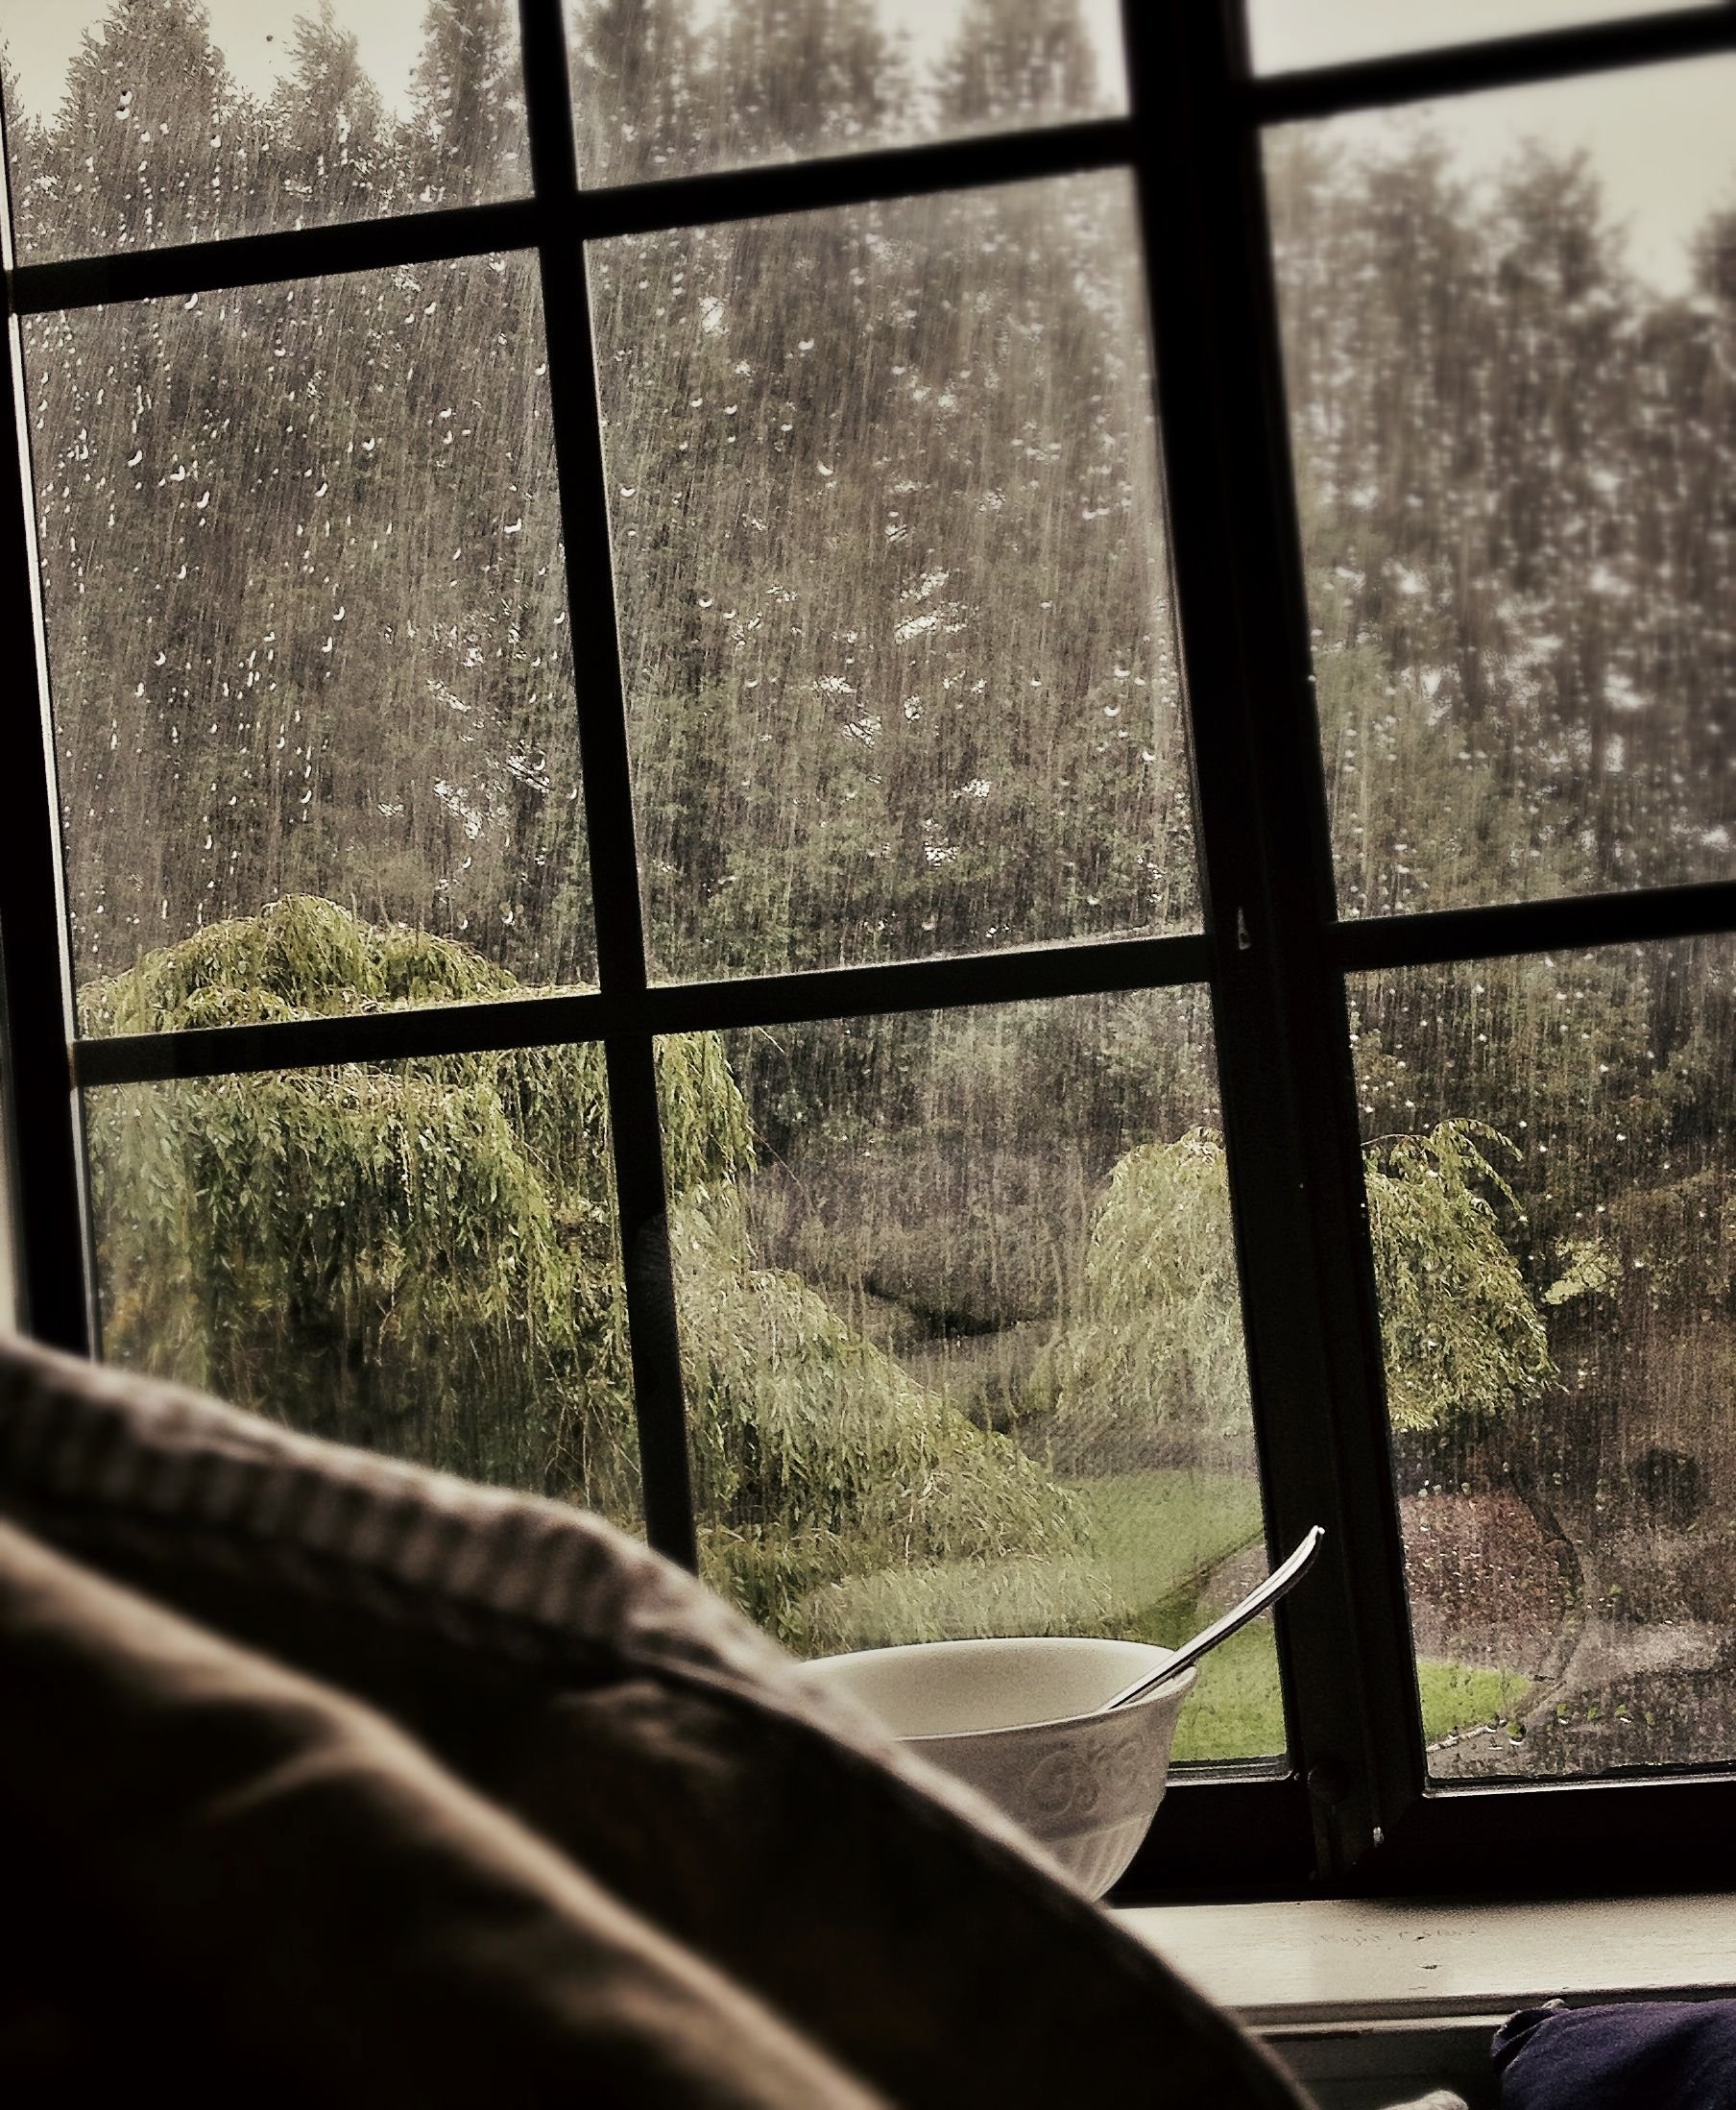 Ilgiz за окном дождь. Дождь за окном. Дождь в окне. Дождливый вид из окна. Окно с видом на природу.